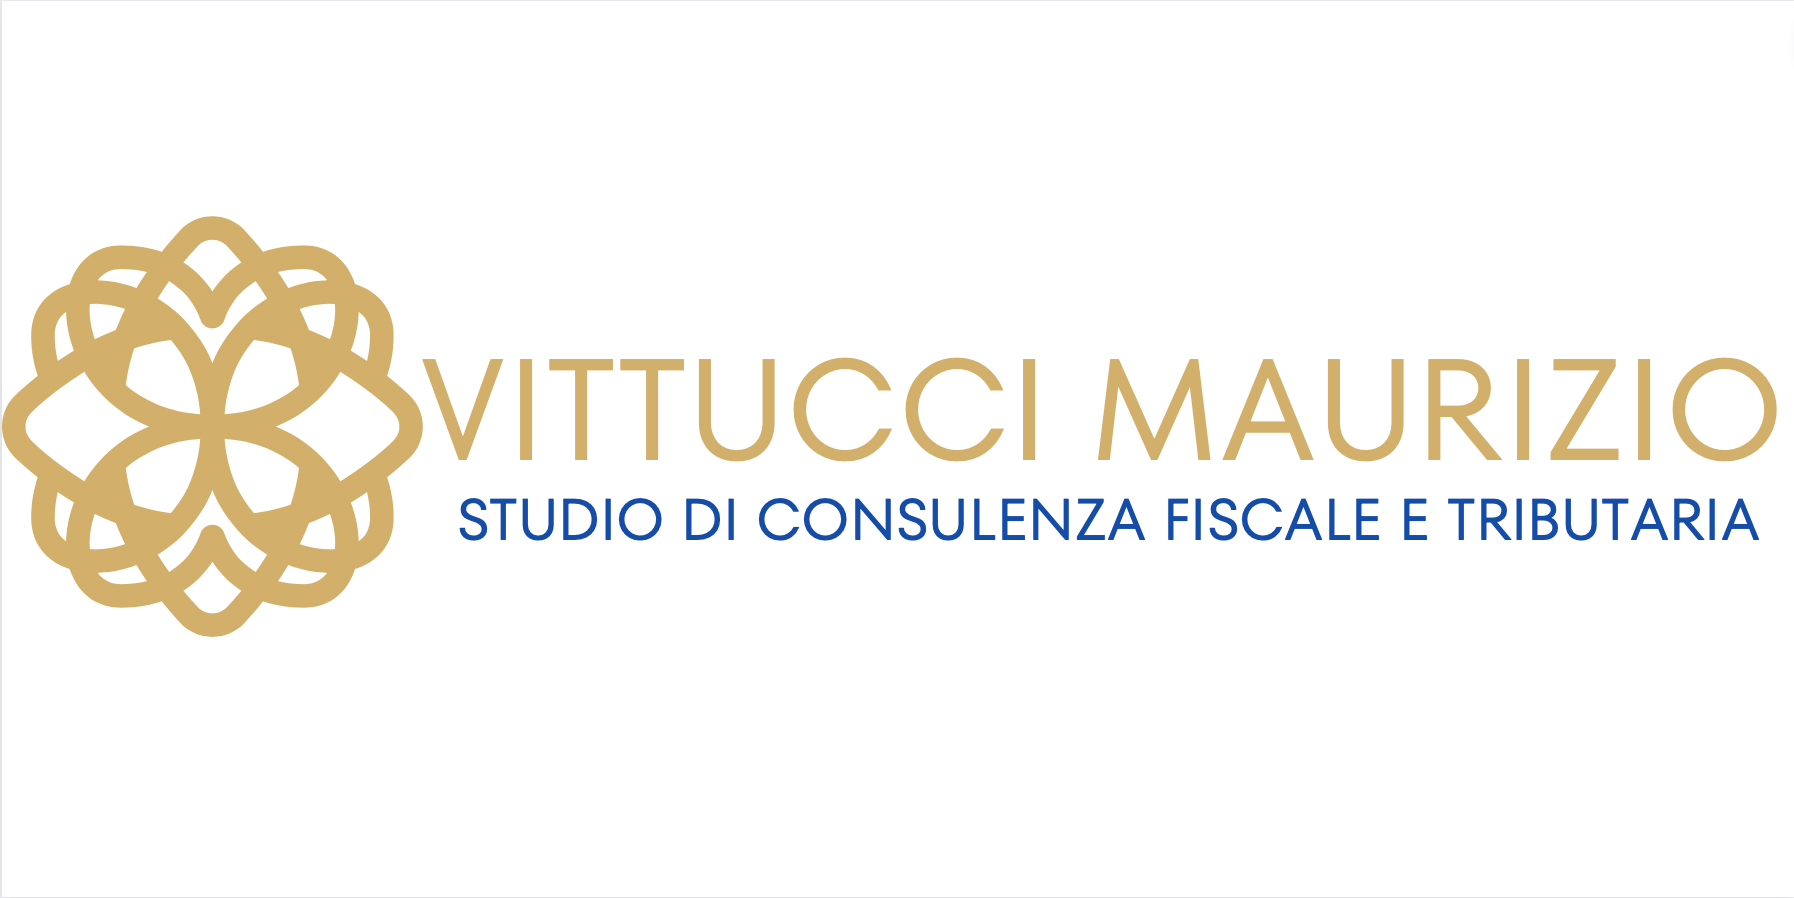 Studio Vittucci Maurizio – Commercialista, Studio consulenza fiscale e contabilità